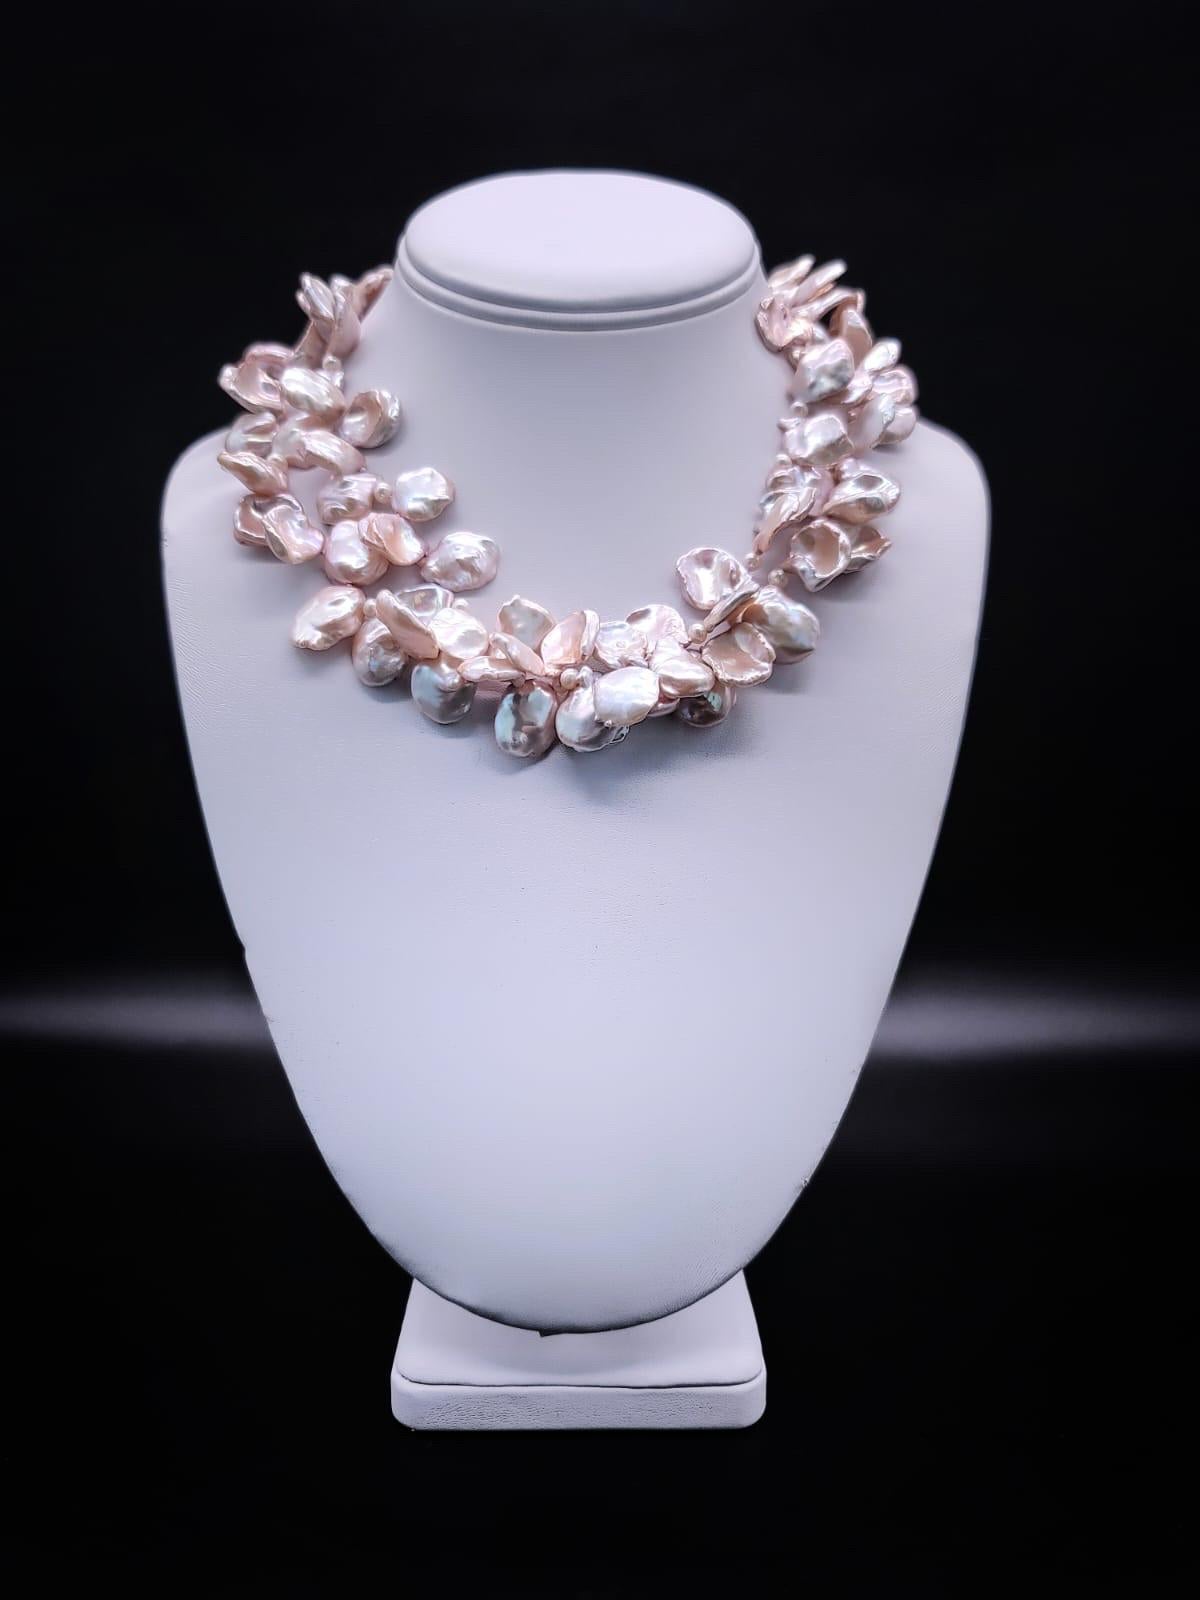 Unique en son genre

Ce collier à 2 rangs de perles keshi d'eau douce, orné d'un camée italien vintage sculpté représentant des fleurs, est un bijou époustouflant et unique qui respire l'élégance intemporelle. Le collier se compose de deux rangs de